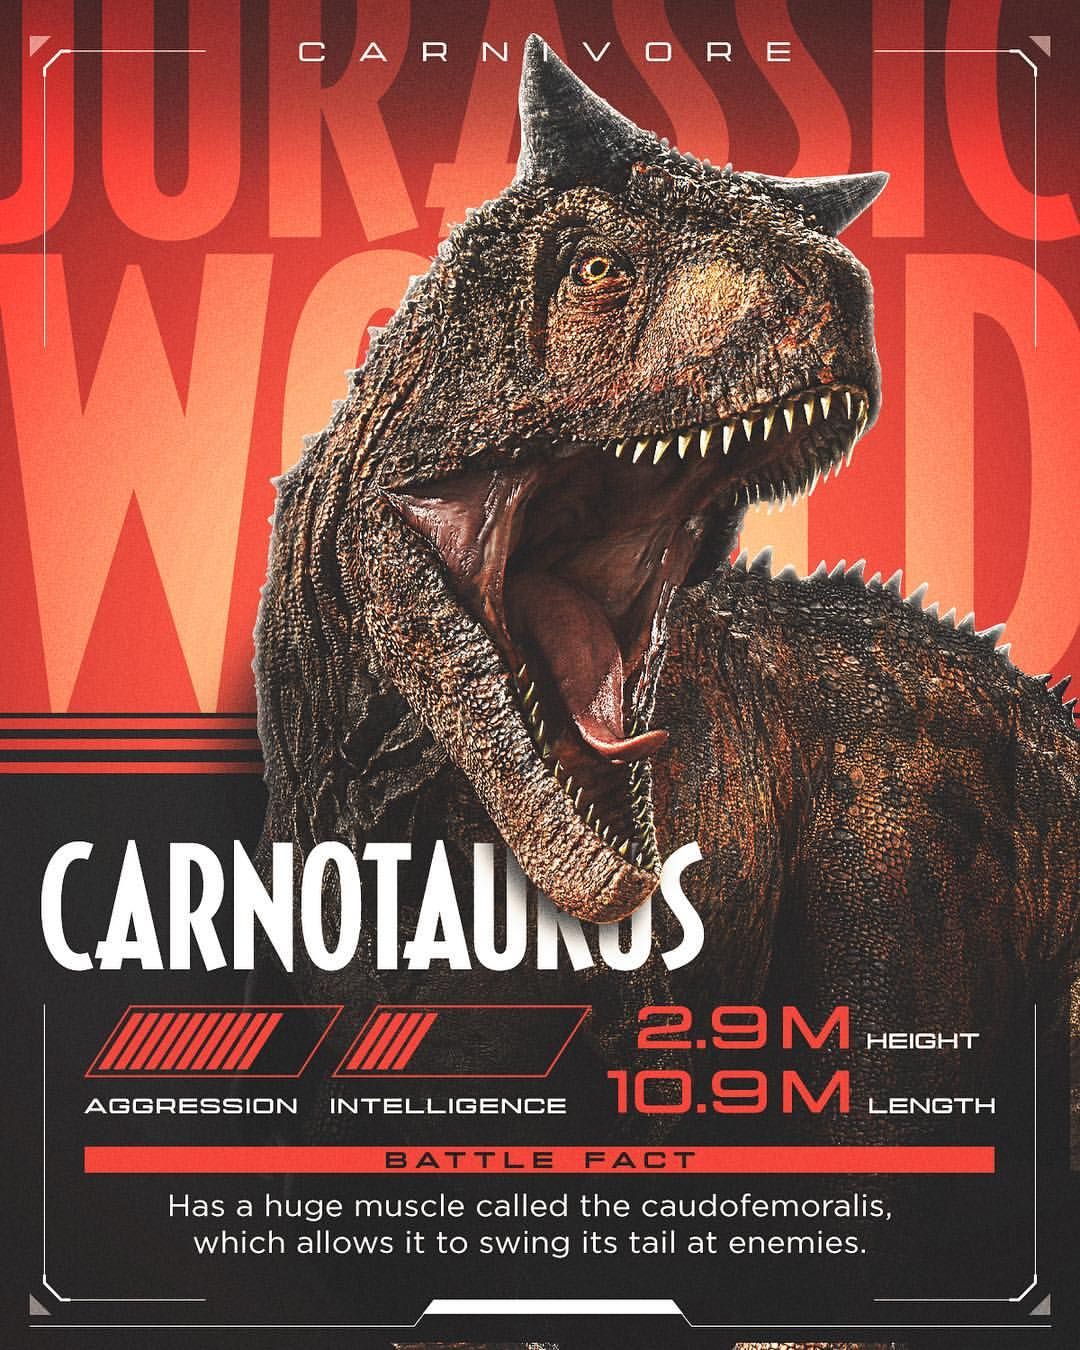 Jurassicworld Round Two Carnotaurus Vs Tyrannosaurus This Looks